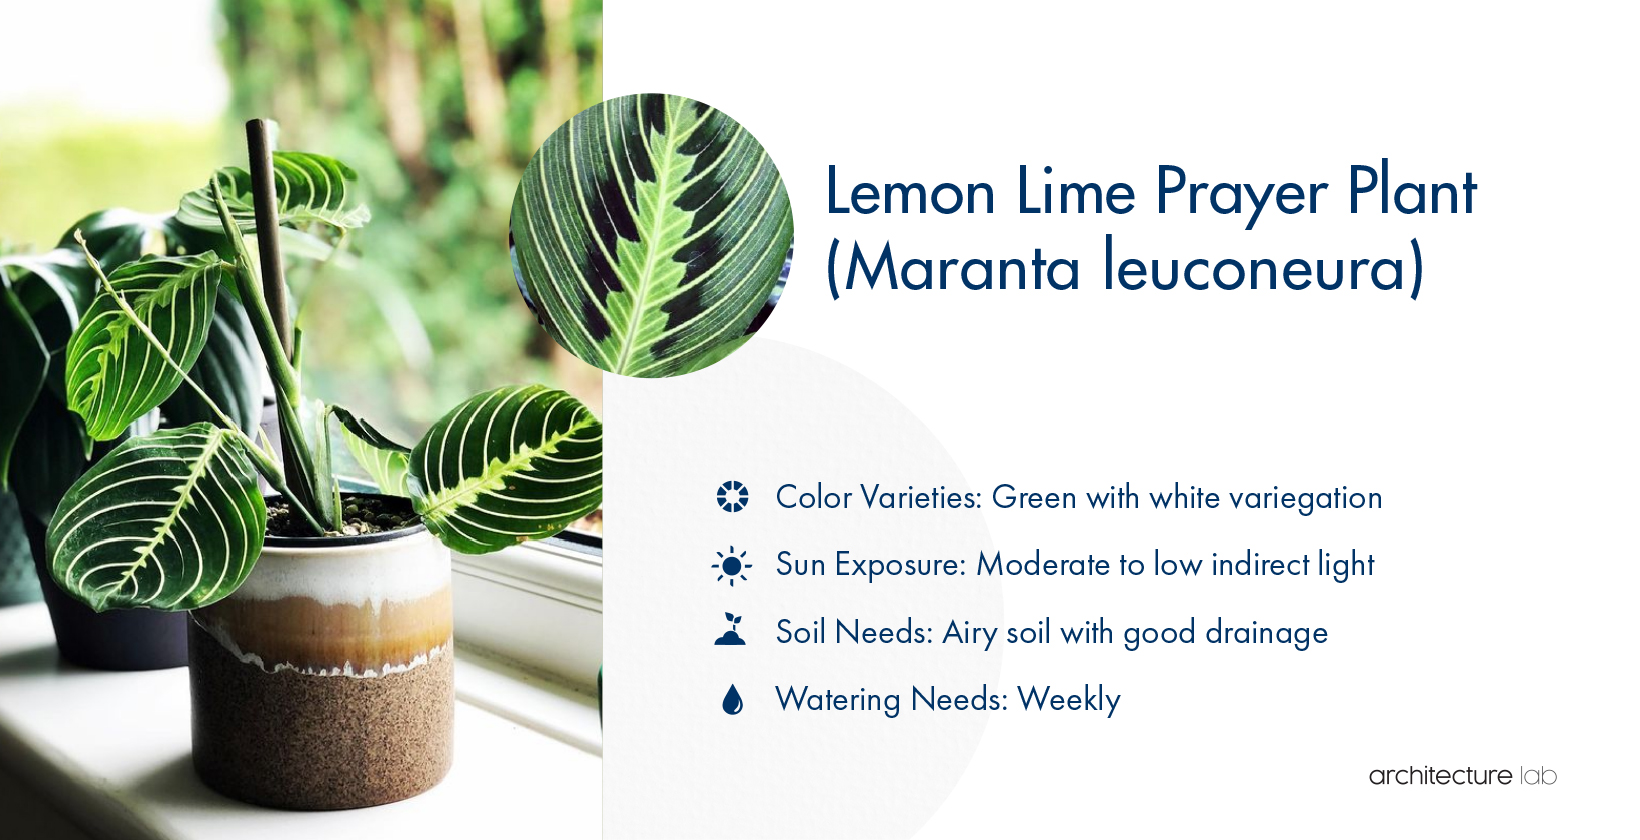 26. Lemon lime prayer plant (maranta leuconeura)